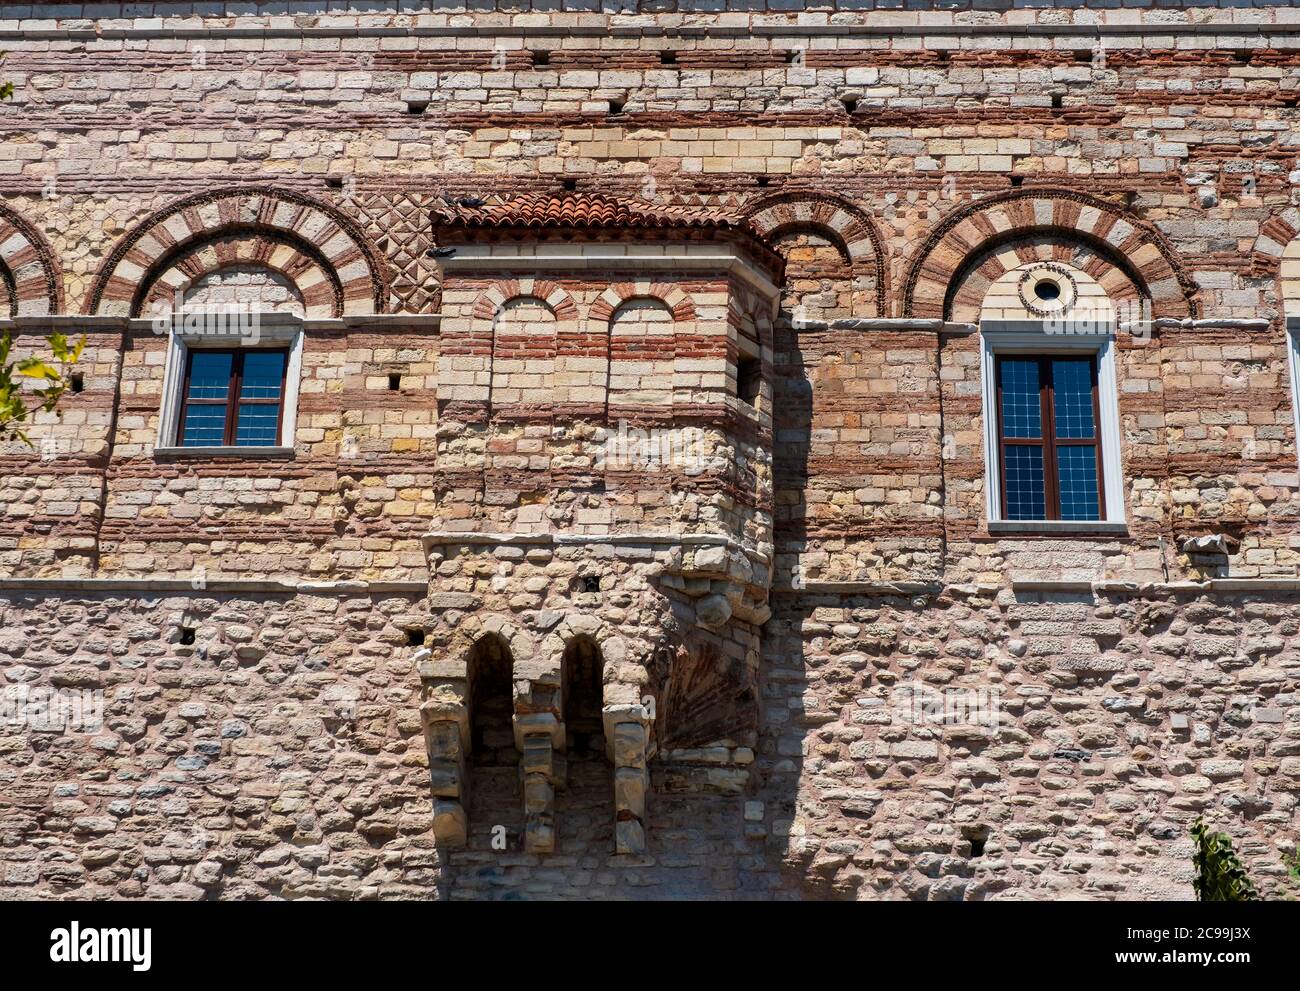 Tekfur Sarayi Museum oder der Palast des Porphyrogenitus, ein byzantinischer Palast aus dem 13. Jahrhundert. Der dickwandige Palast, der an die Landmauern angrenzt. Stockfoto